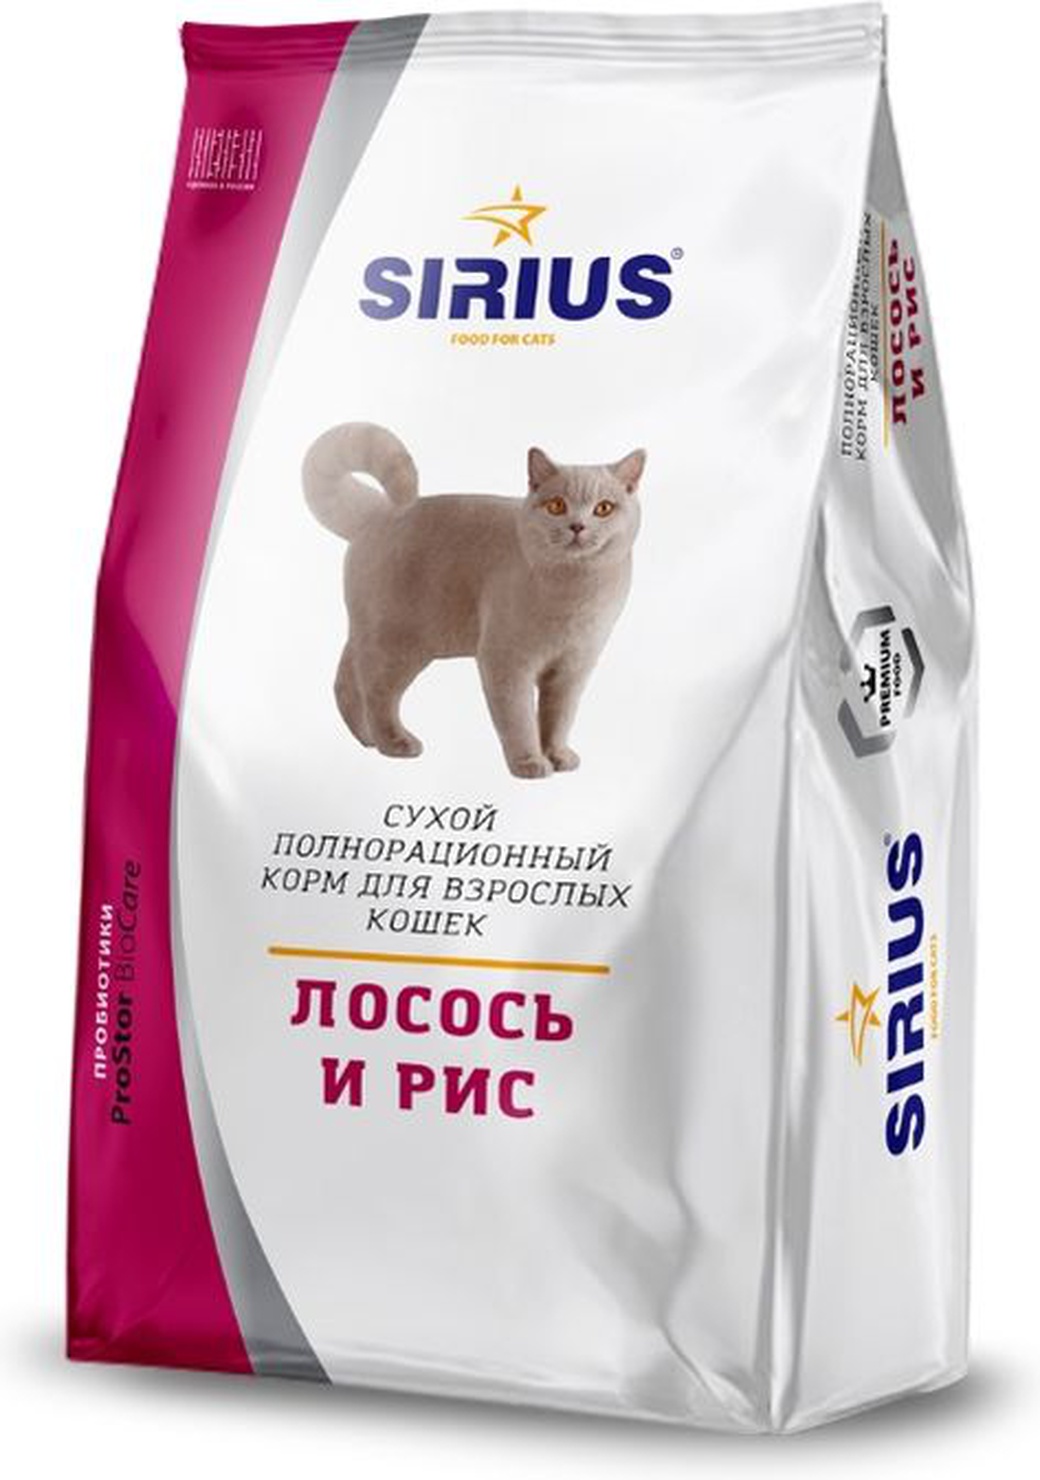 SIRIUS Сухой корм для взрослых кошек Лосось и рис, 1,5 кг фото